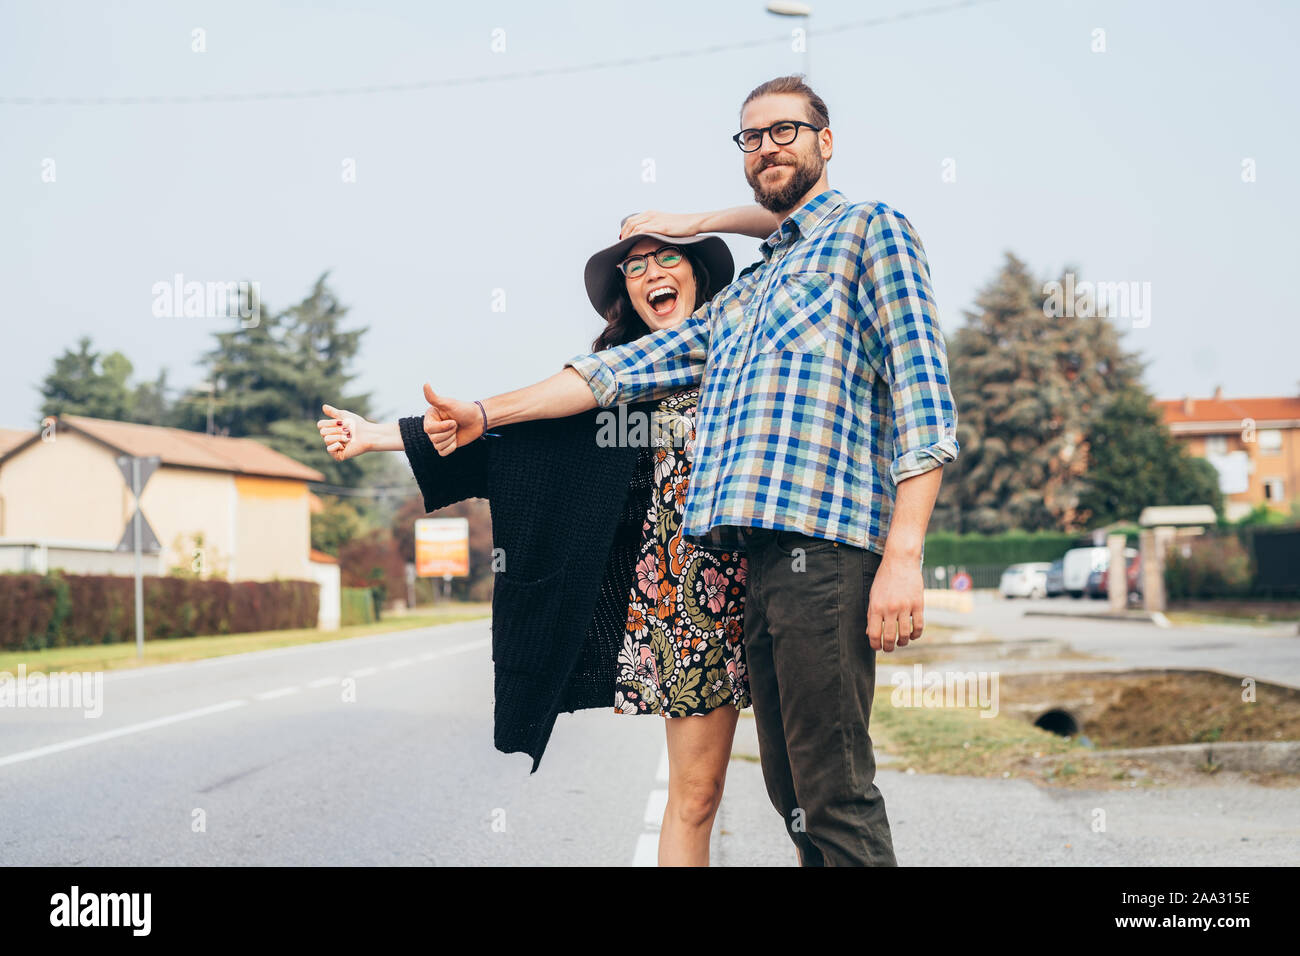 Gerne schöne junge Paar outdoor per Anhalter fahren Spaß throughfare - Reise, Verkehr Konzept Stockfoto